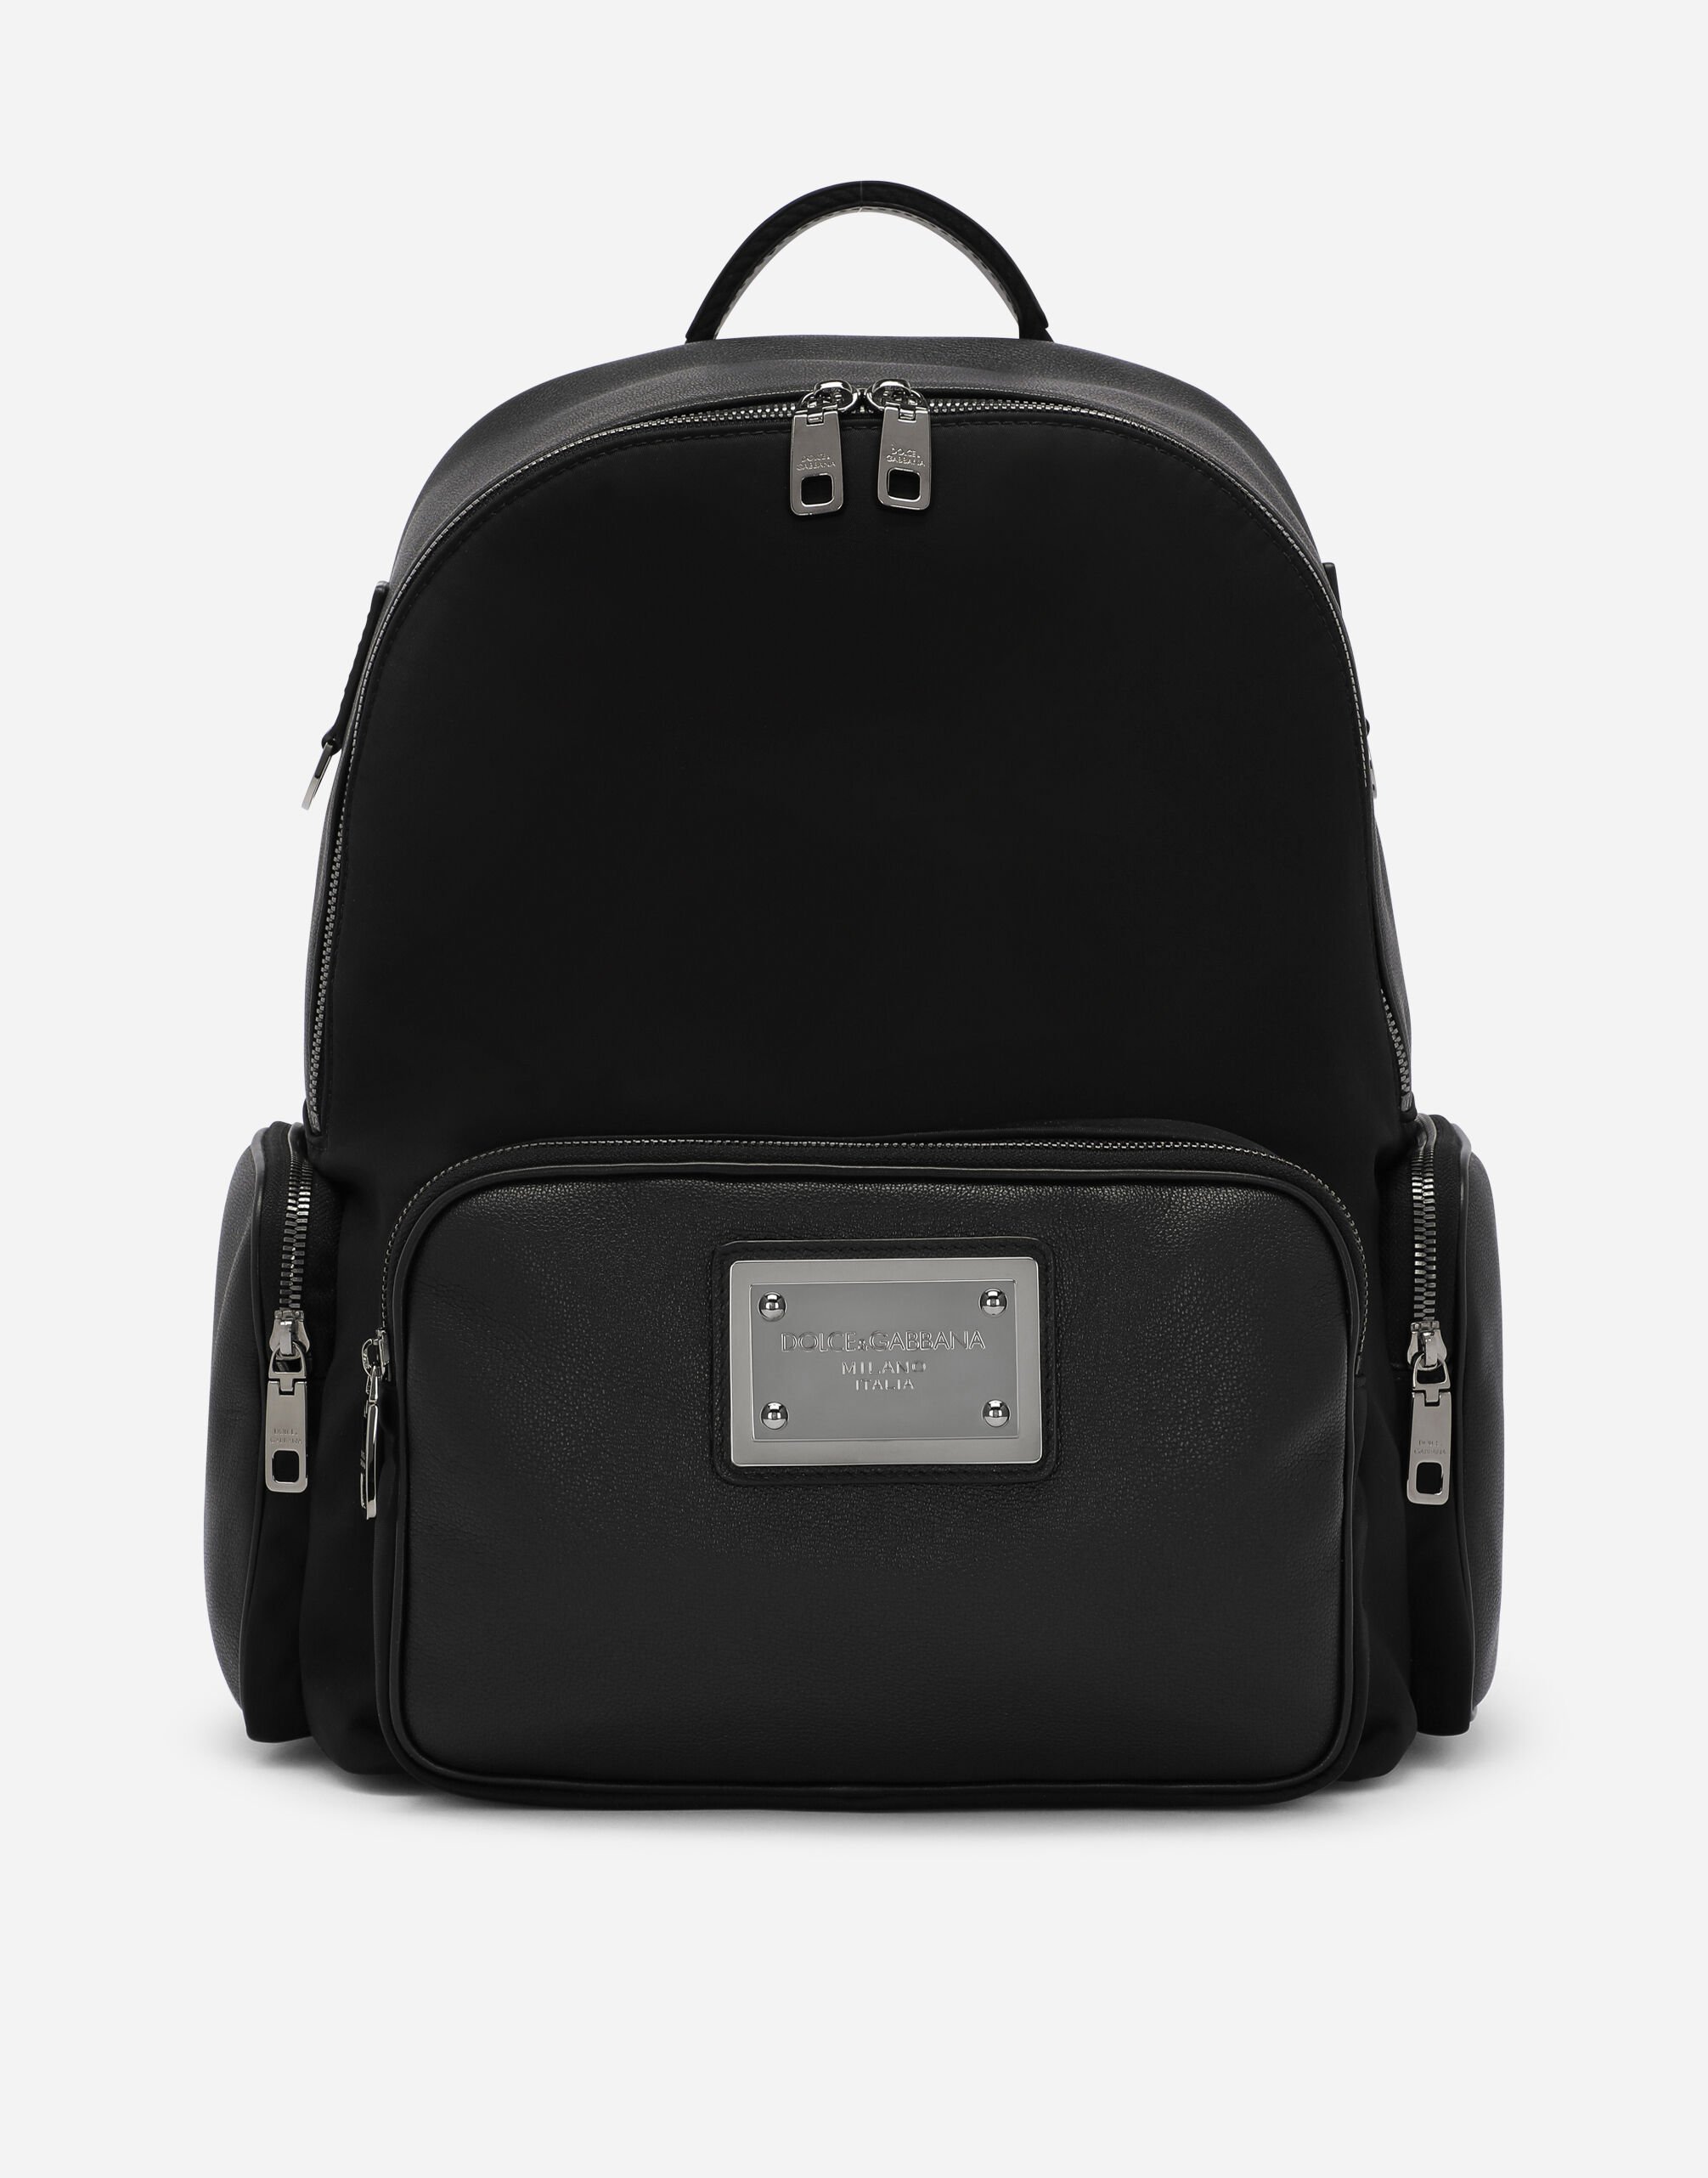 Dolce & Gabbana Grainy calfskin and nylon backpack Black BM2218AG182